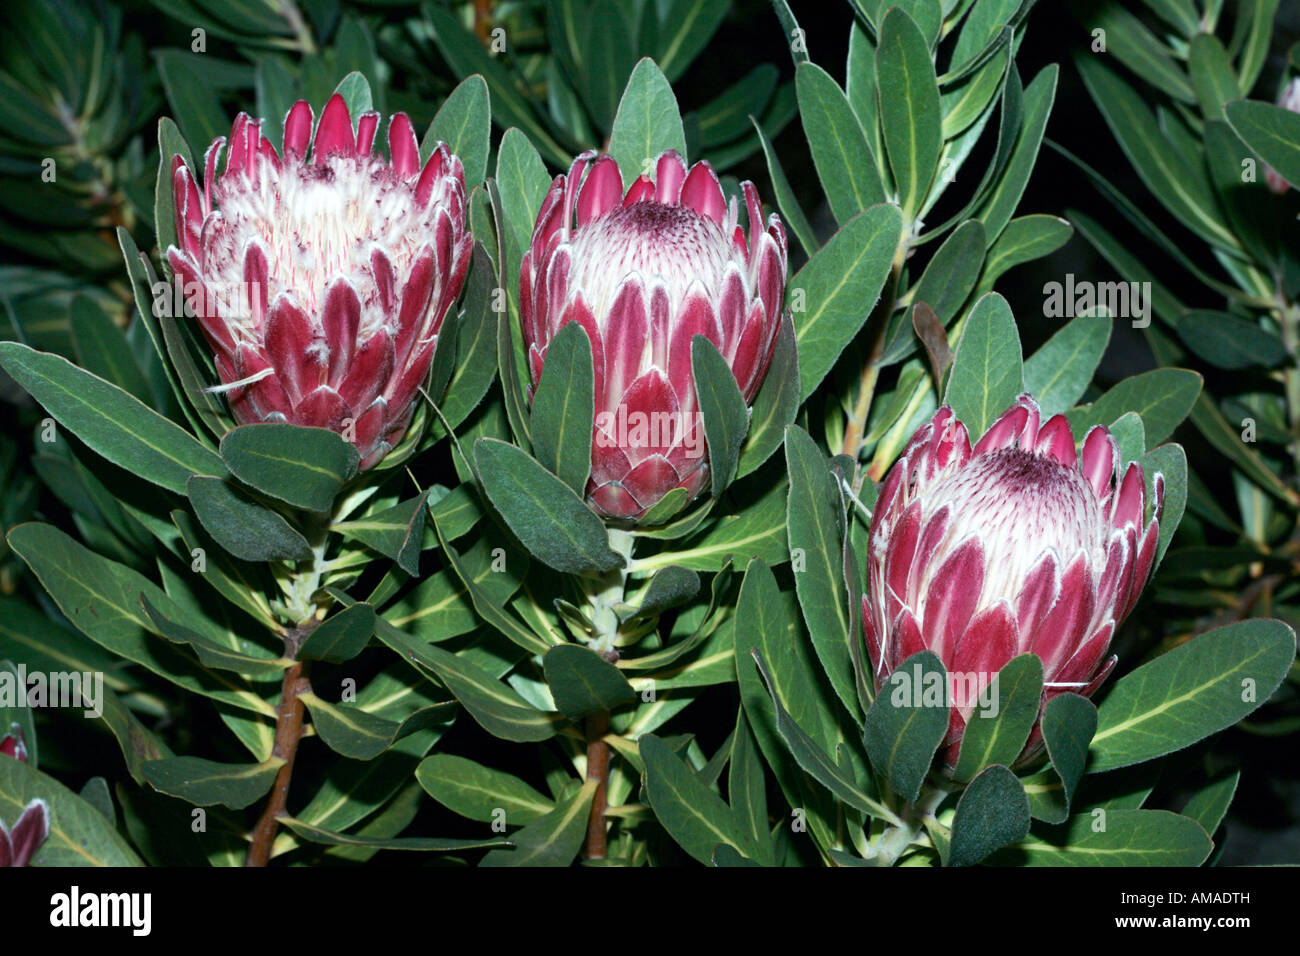 Protea/Sugarbush -Protea repens Stock Photo